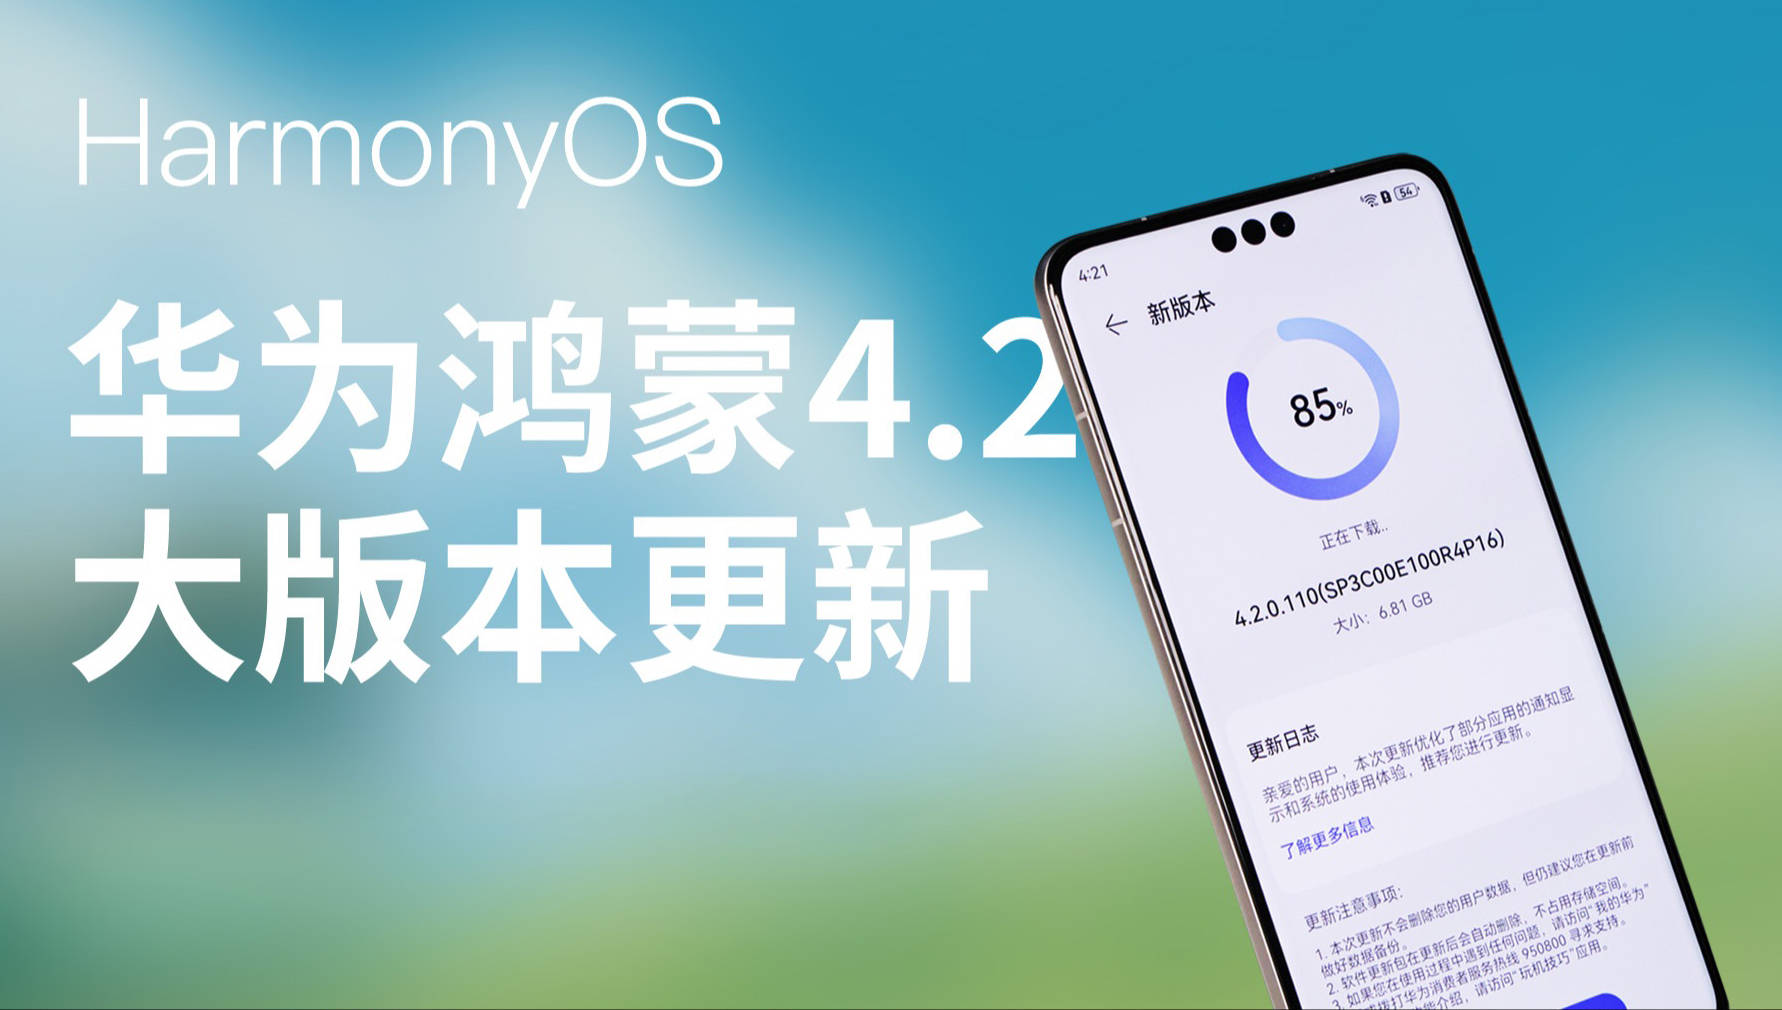 New Phones Update to HarmonyOS 4.2